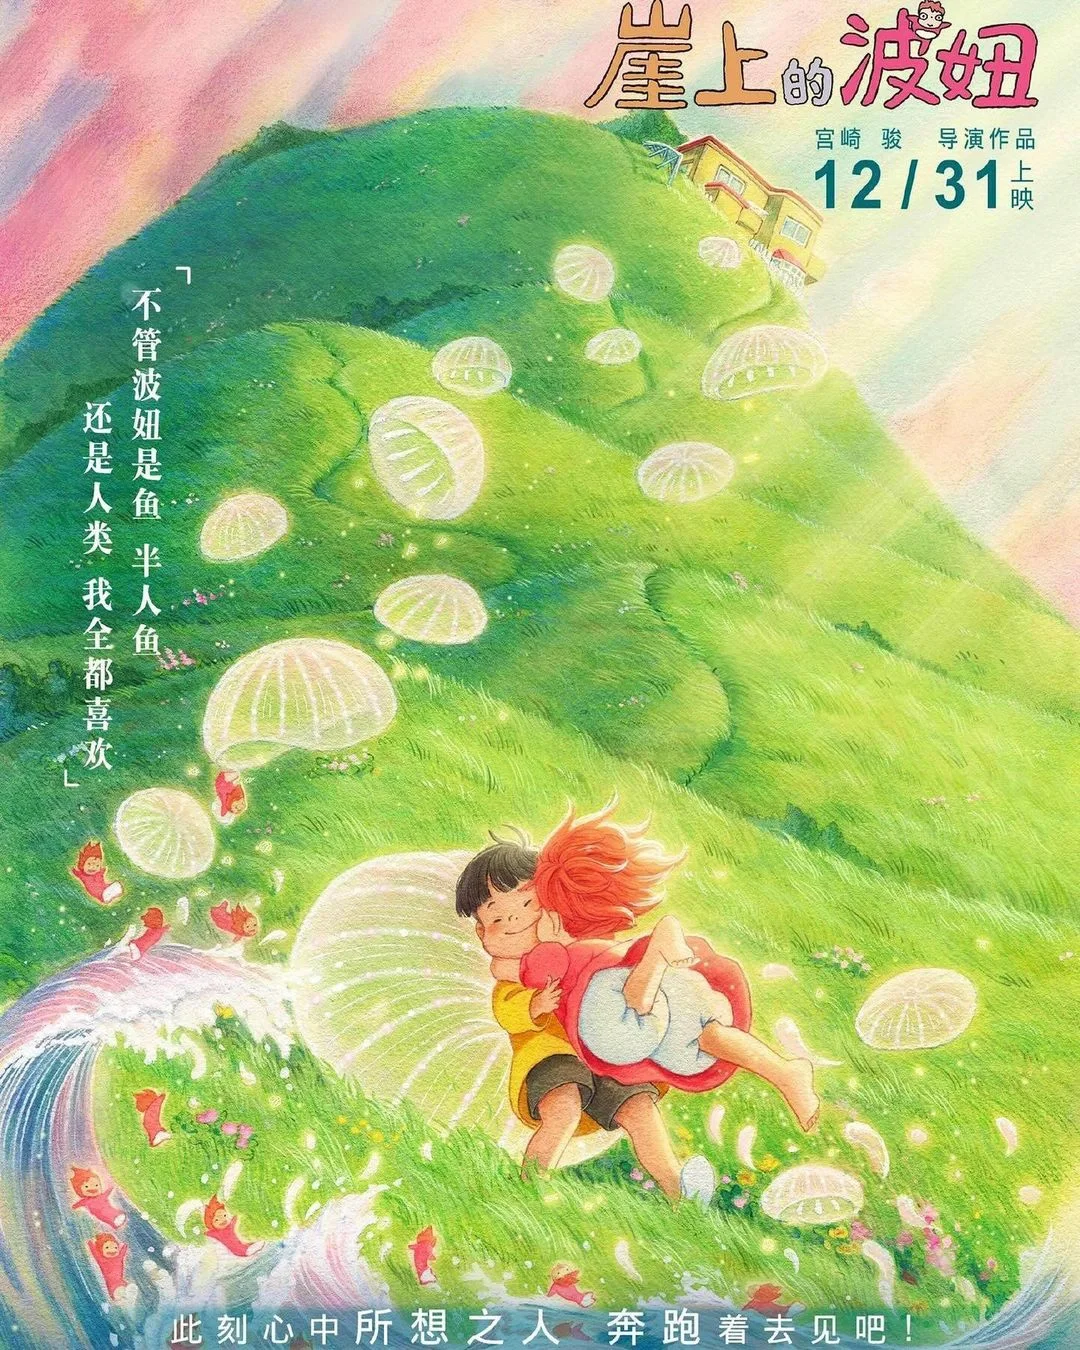 一组宫崎骏动画 国内电影海报欣赏